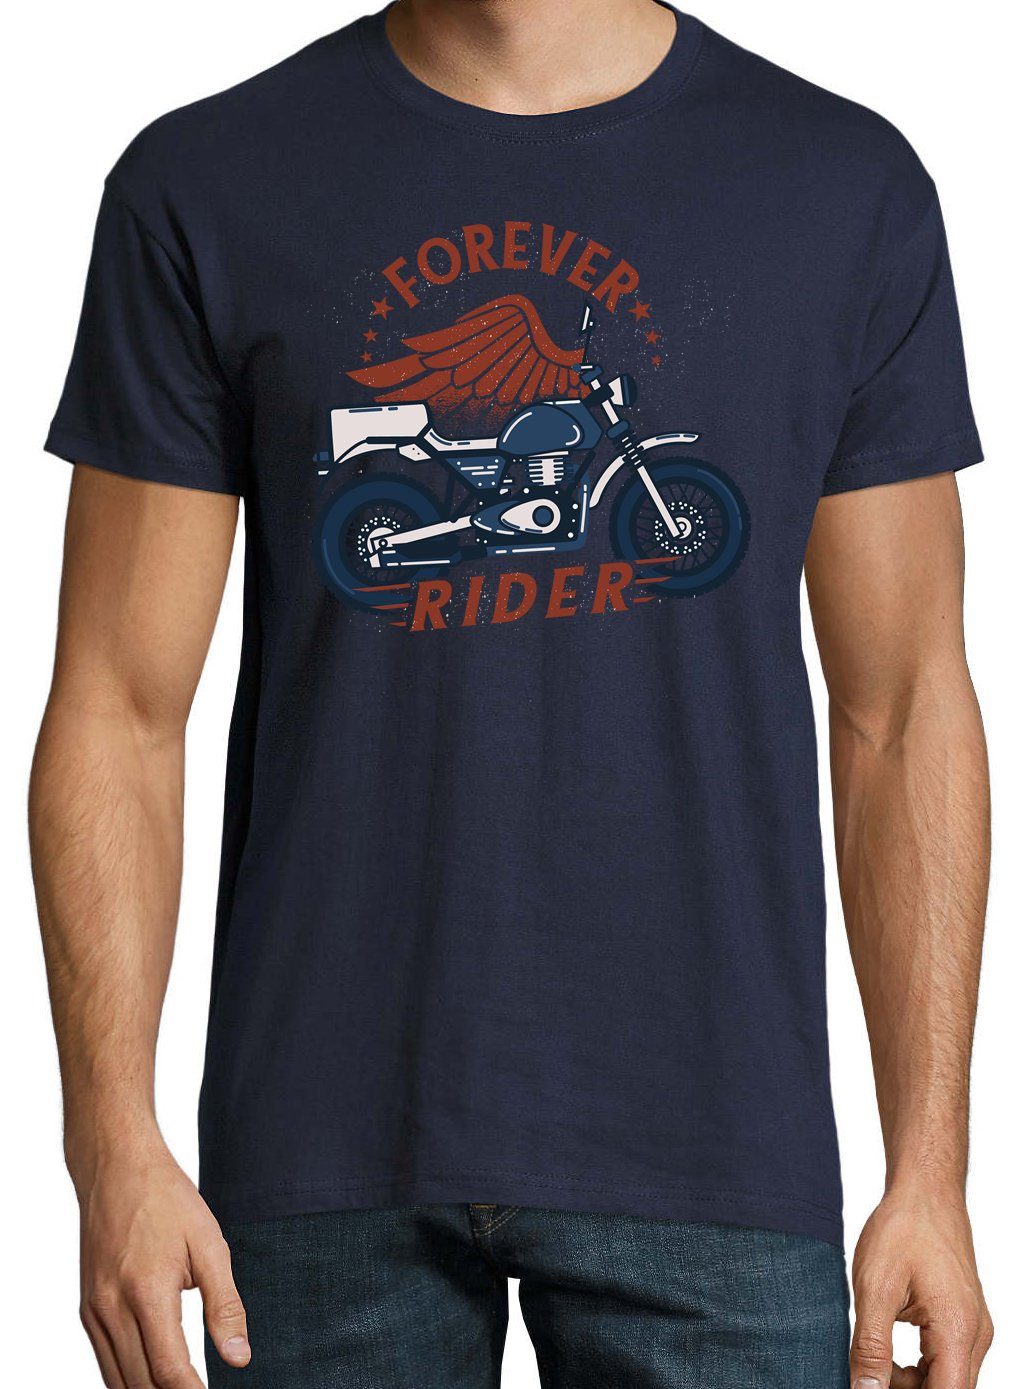 Frontprint Navyblau Youth trendigem T-Shirt Rider Shirt Herren mit Designz Forever